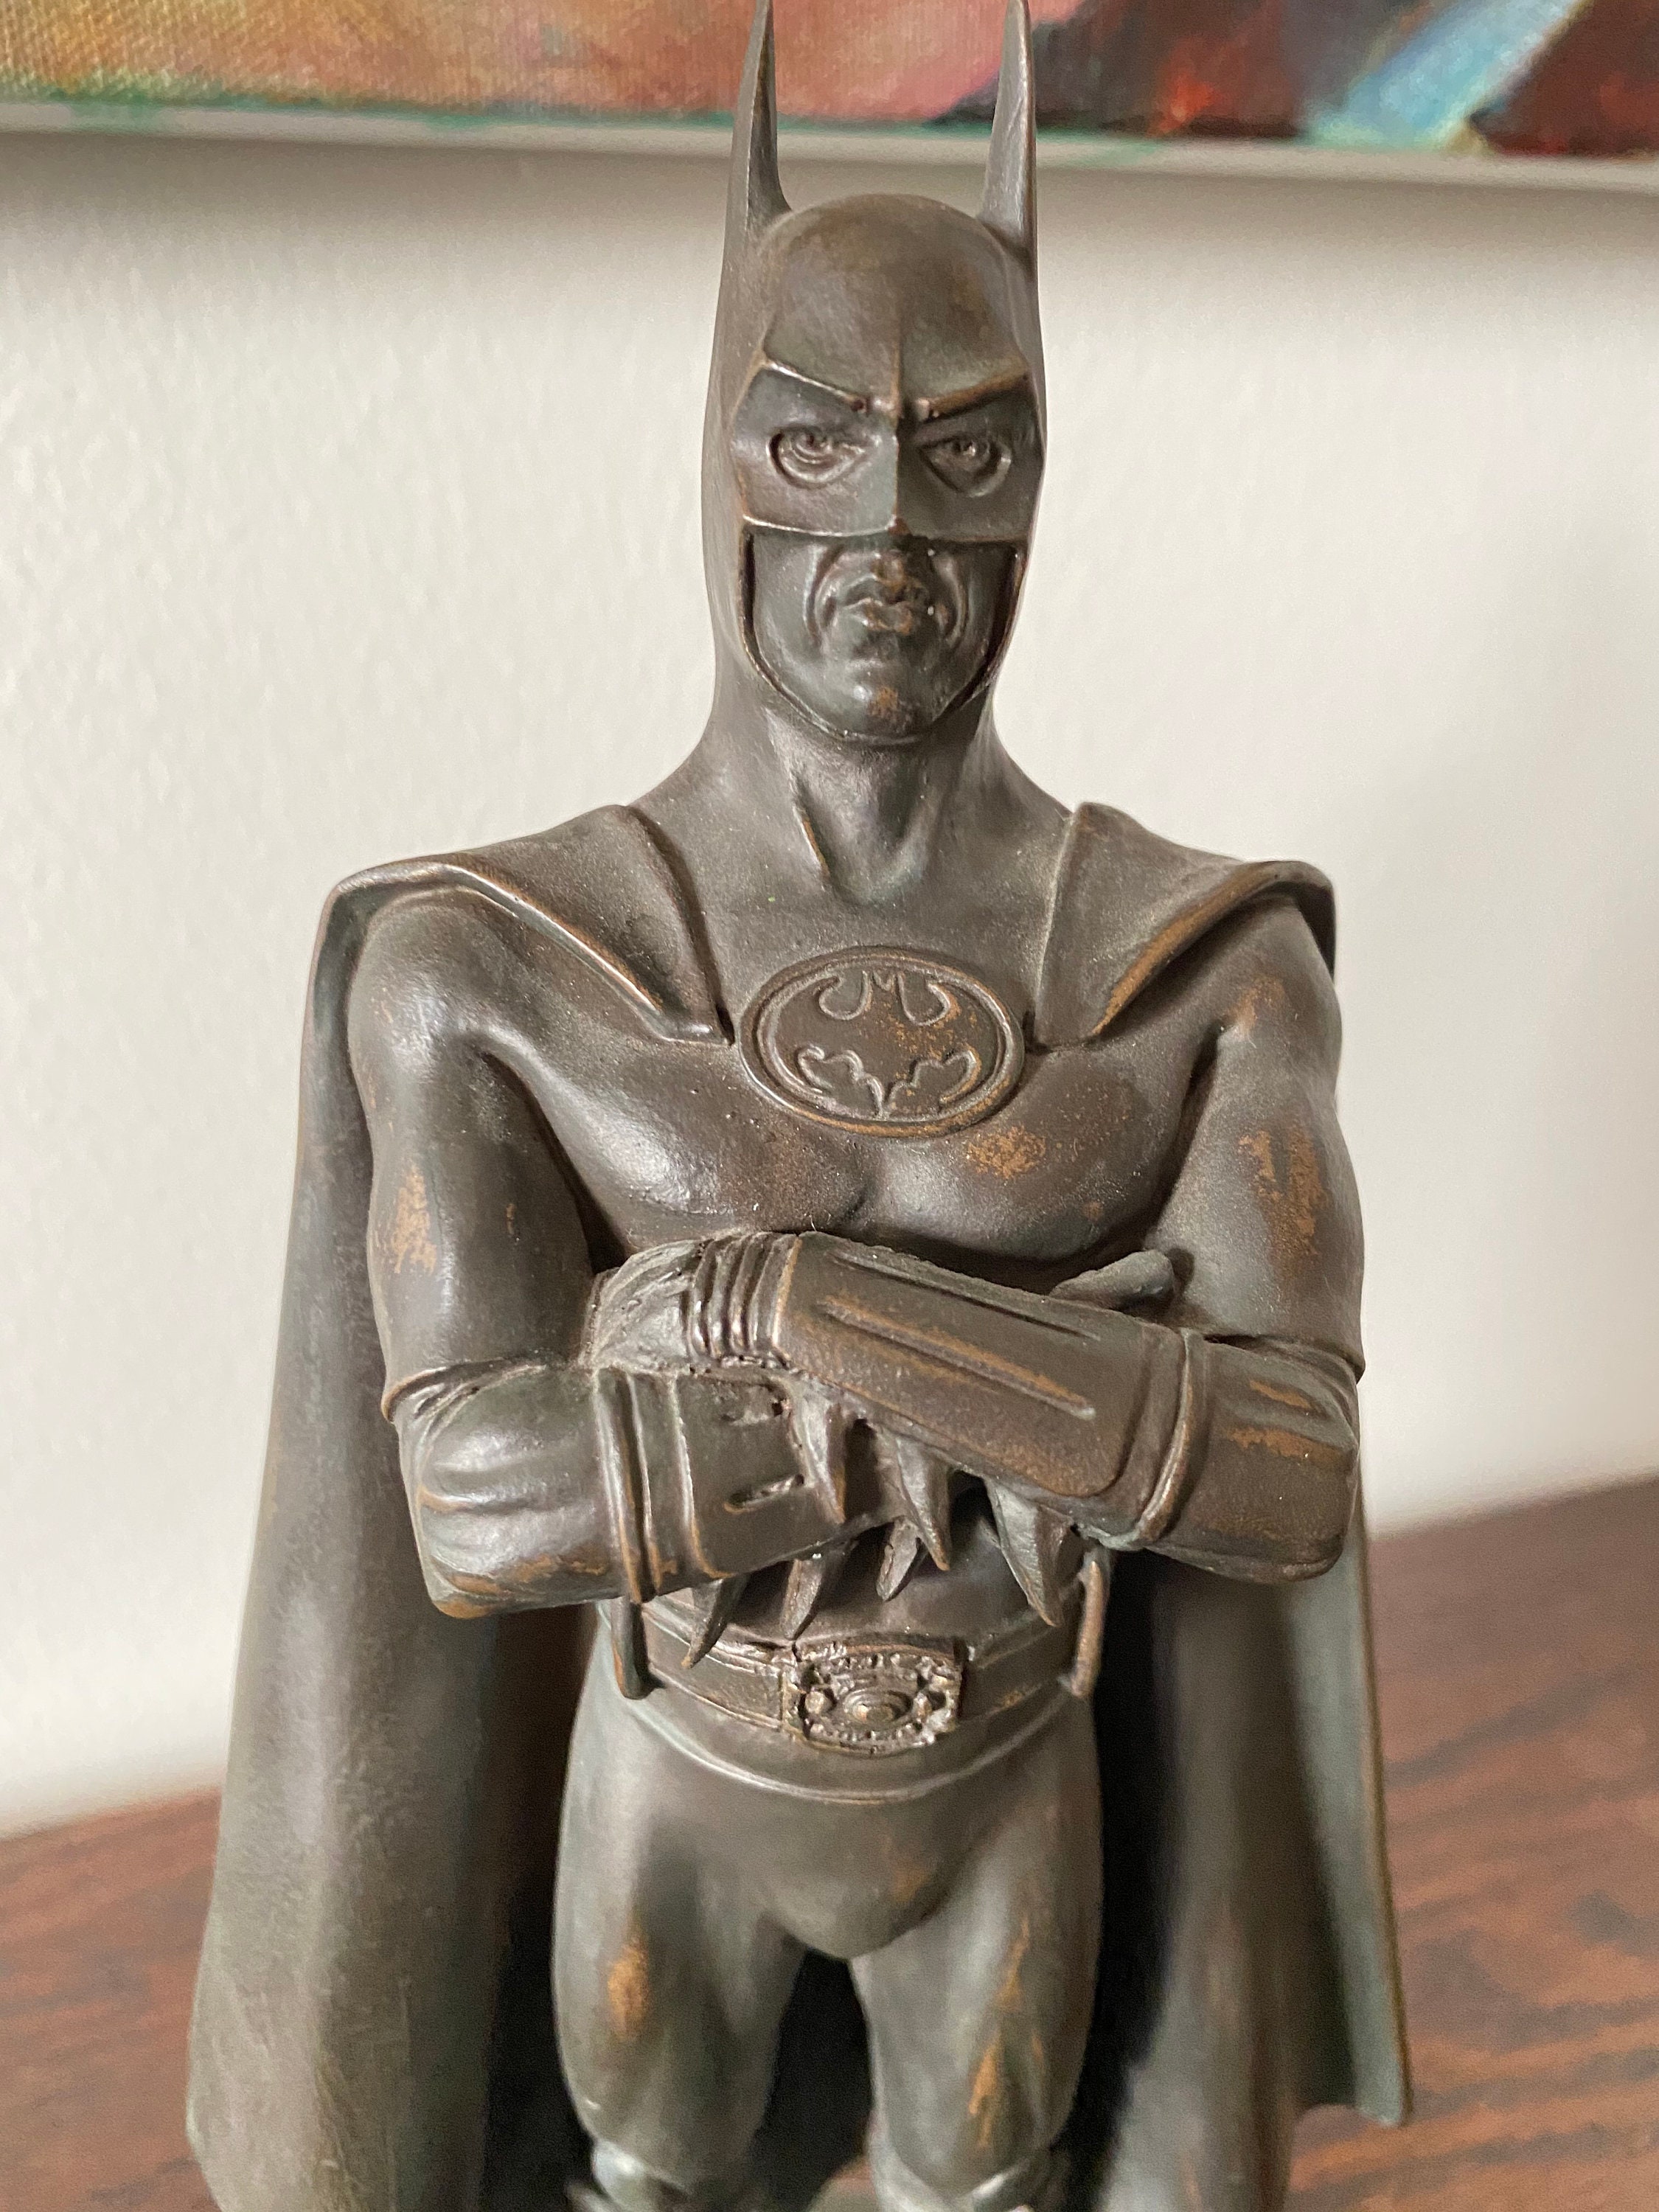 Michael Keaton as Batman 1989 Statue by Kent Milton - Etsy Finland